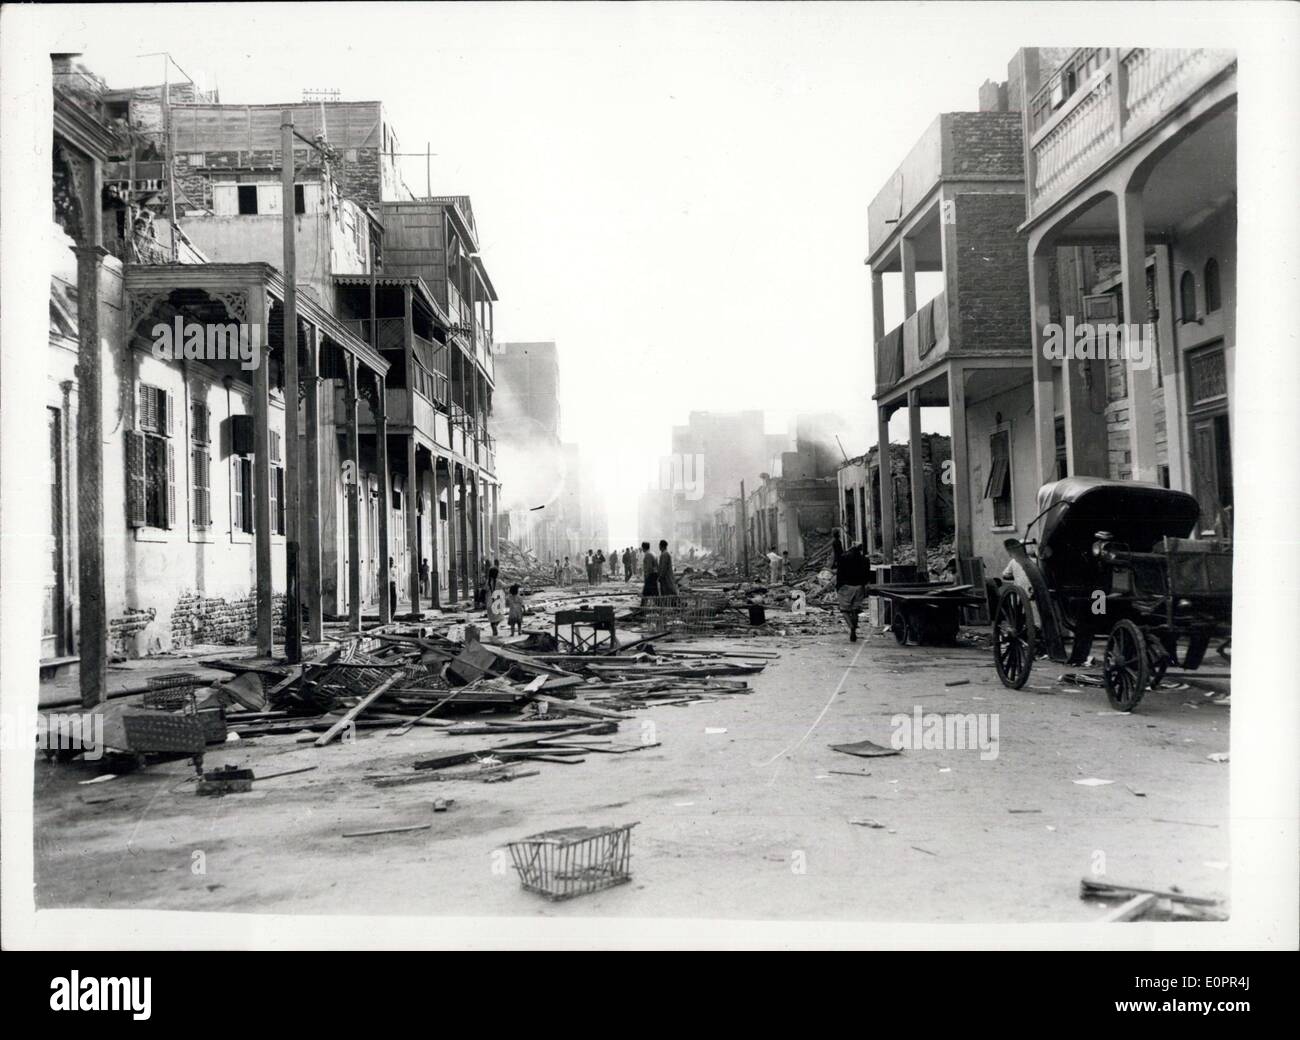 08 nov., 1956 - Anglo - les troupes françaises occupent Port Said : une vue d'une des rues principales de Port a déclaré qu'elle couve après avoir été défigurée par le feu. Montrant les Arabes d'errer dans la recherche de biens. Banque D'Images